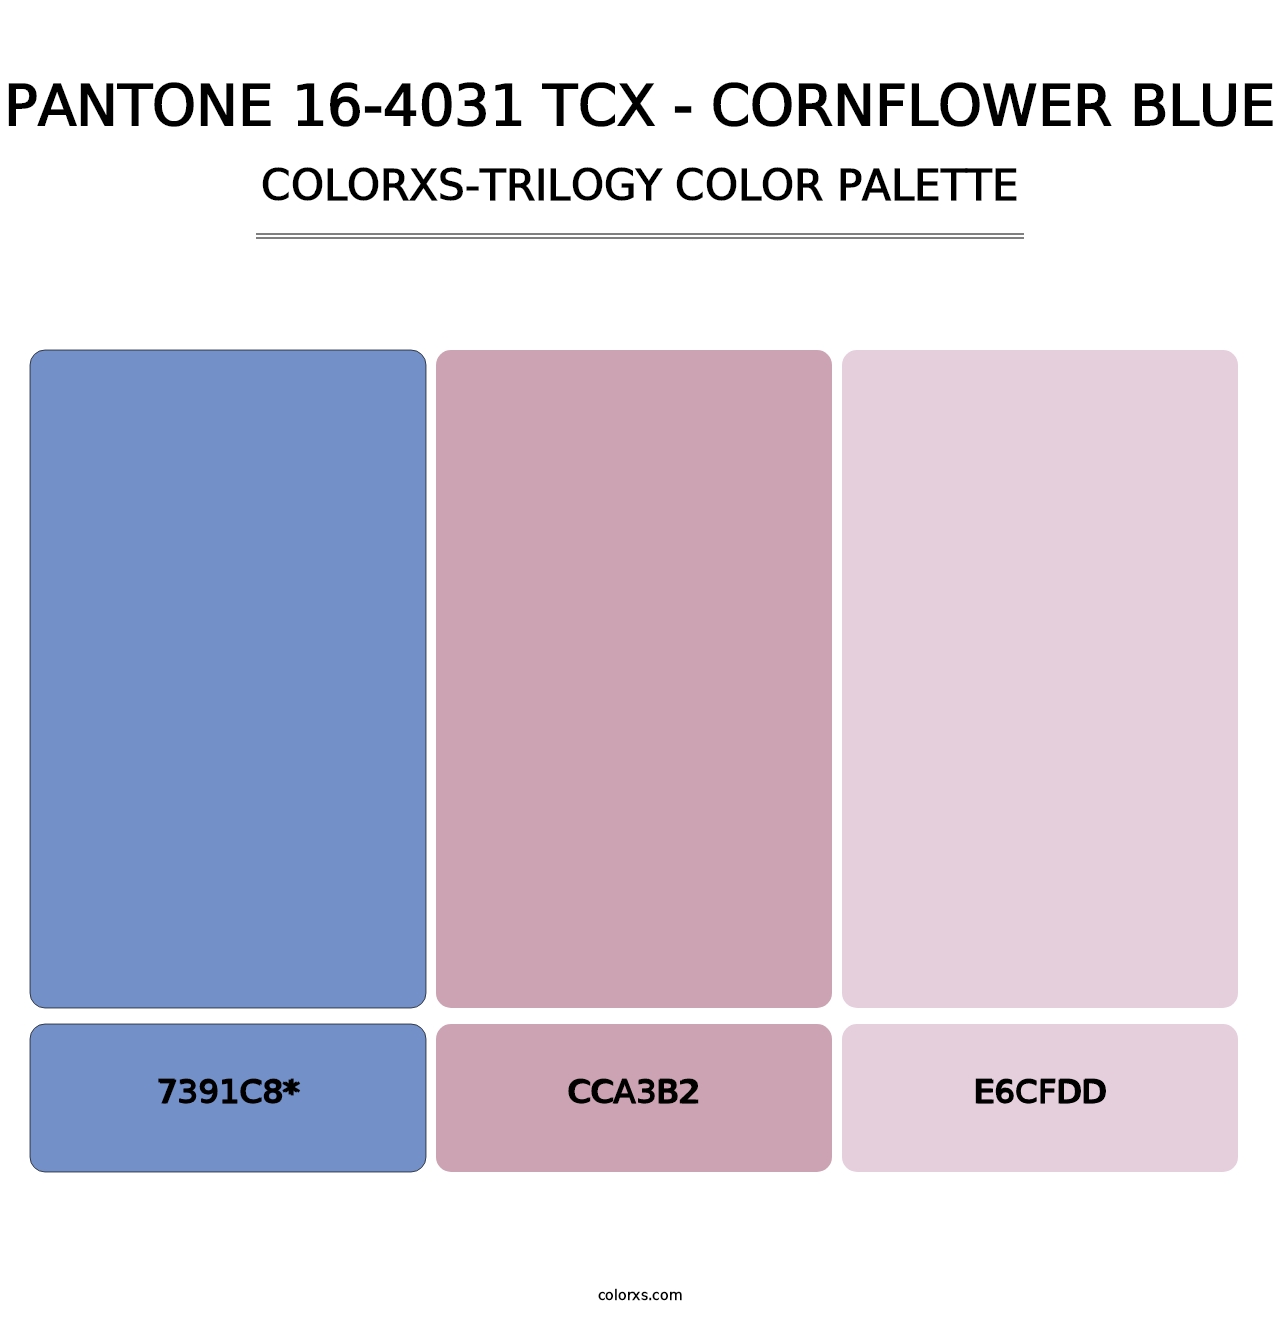 PANTONE 16-4031 TCX - Cornflower Blue - Colorxs Trilogy Palette